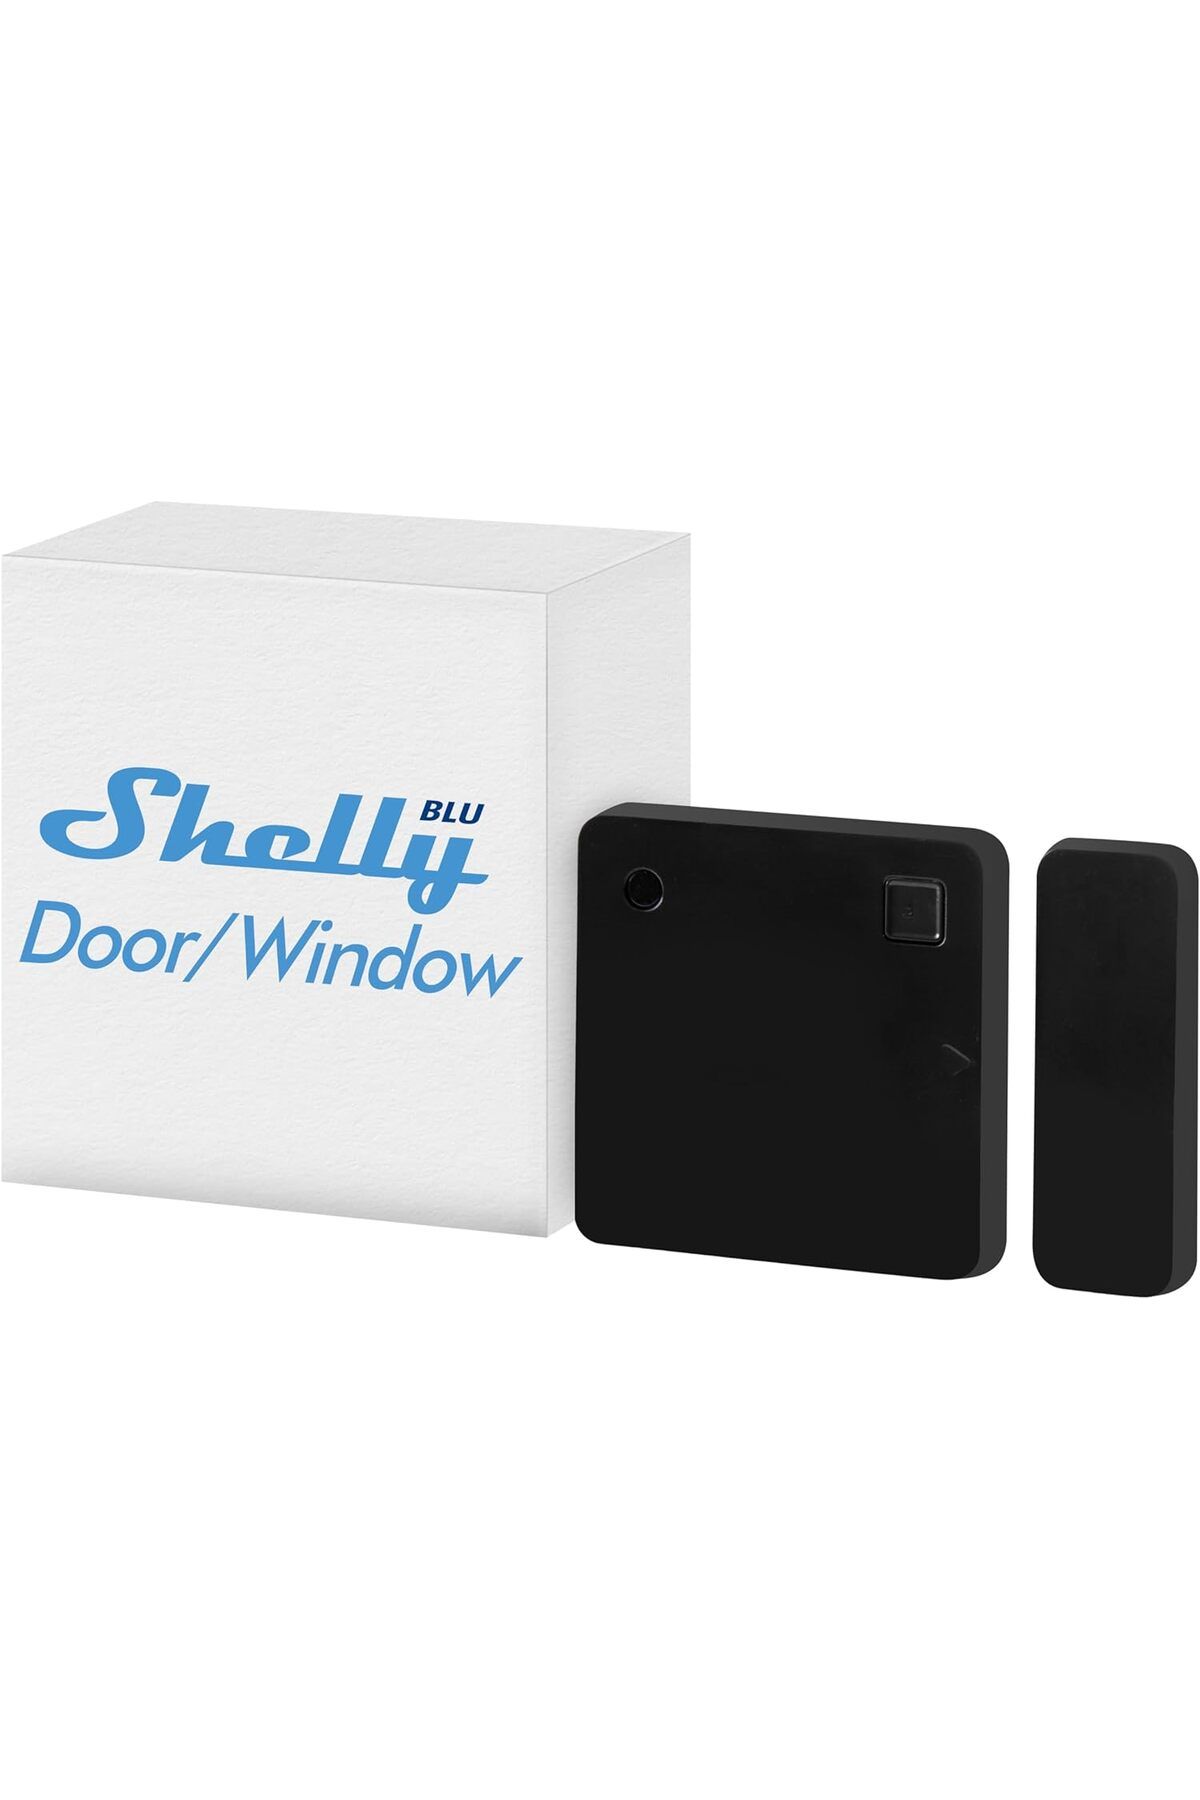 Shelly Pencere Sensörü: Bluetooth Destekli, Uzun Ömürlü Pil, Otomasyon Senaryoları ile Ev Güvenliği